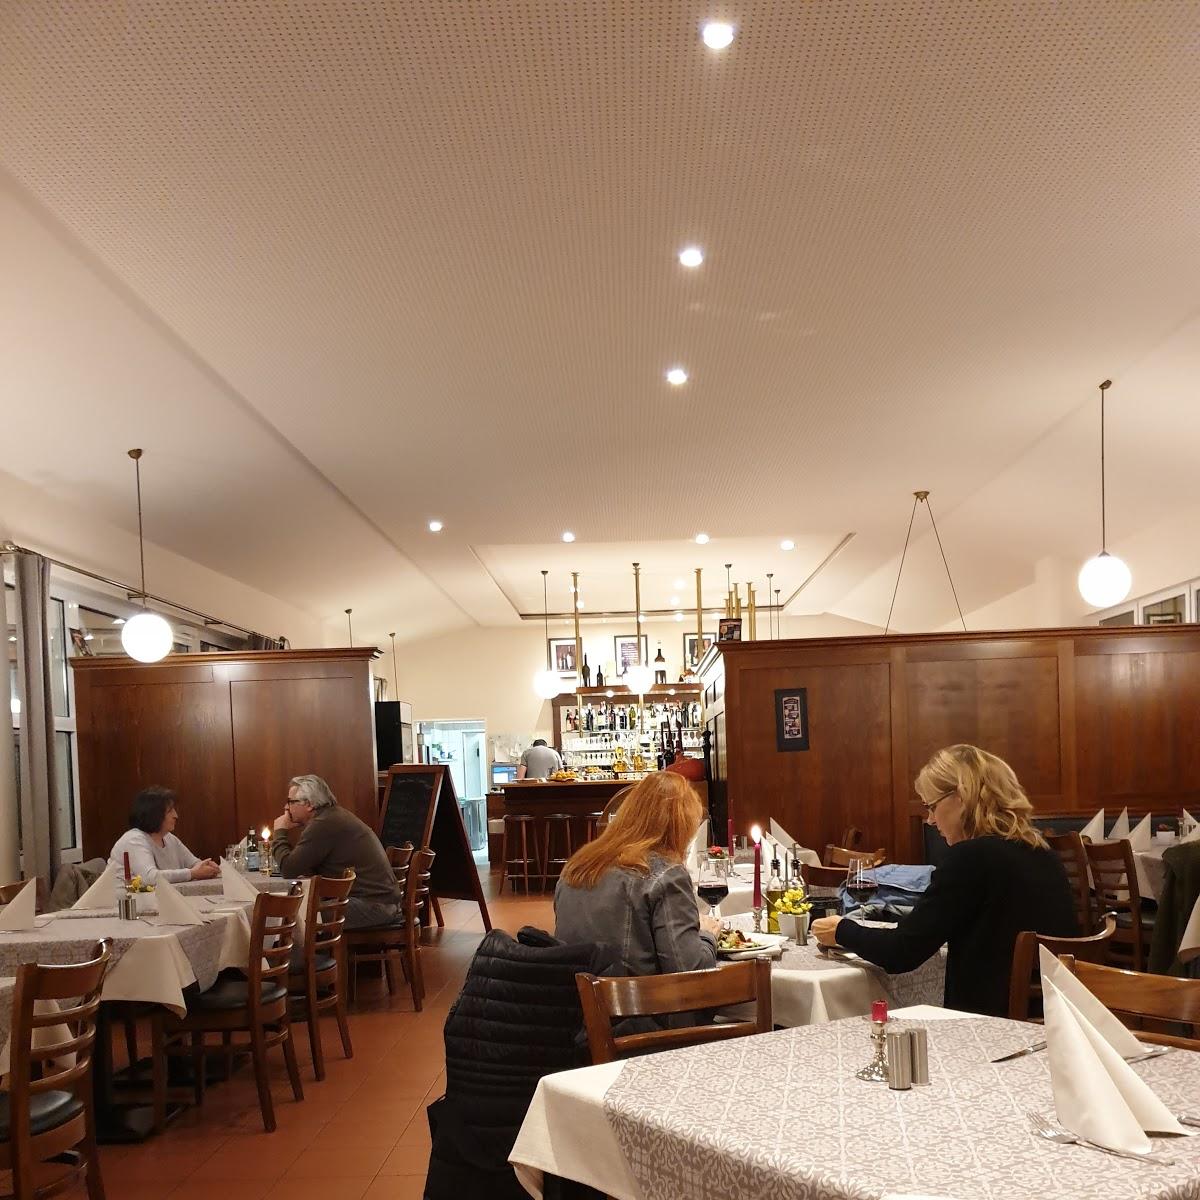 Restaurant "Ristorante Reiterstube" in  Bisingen